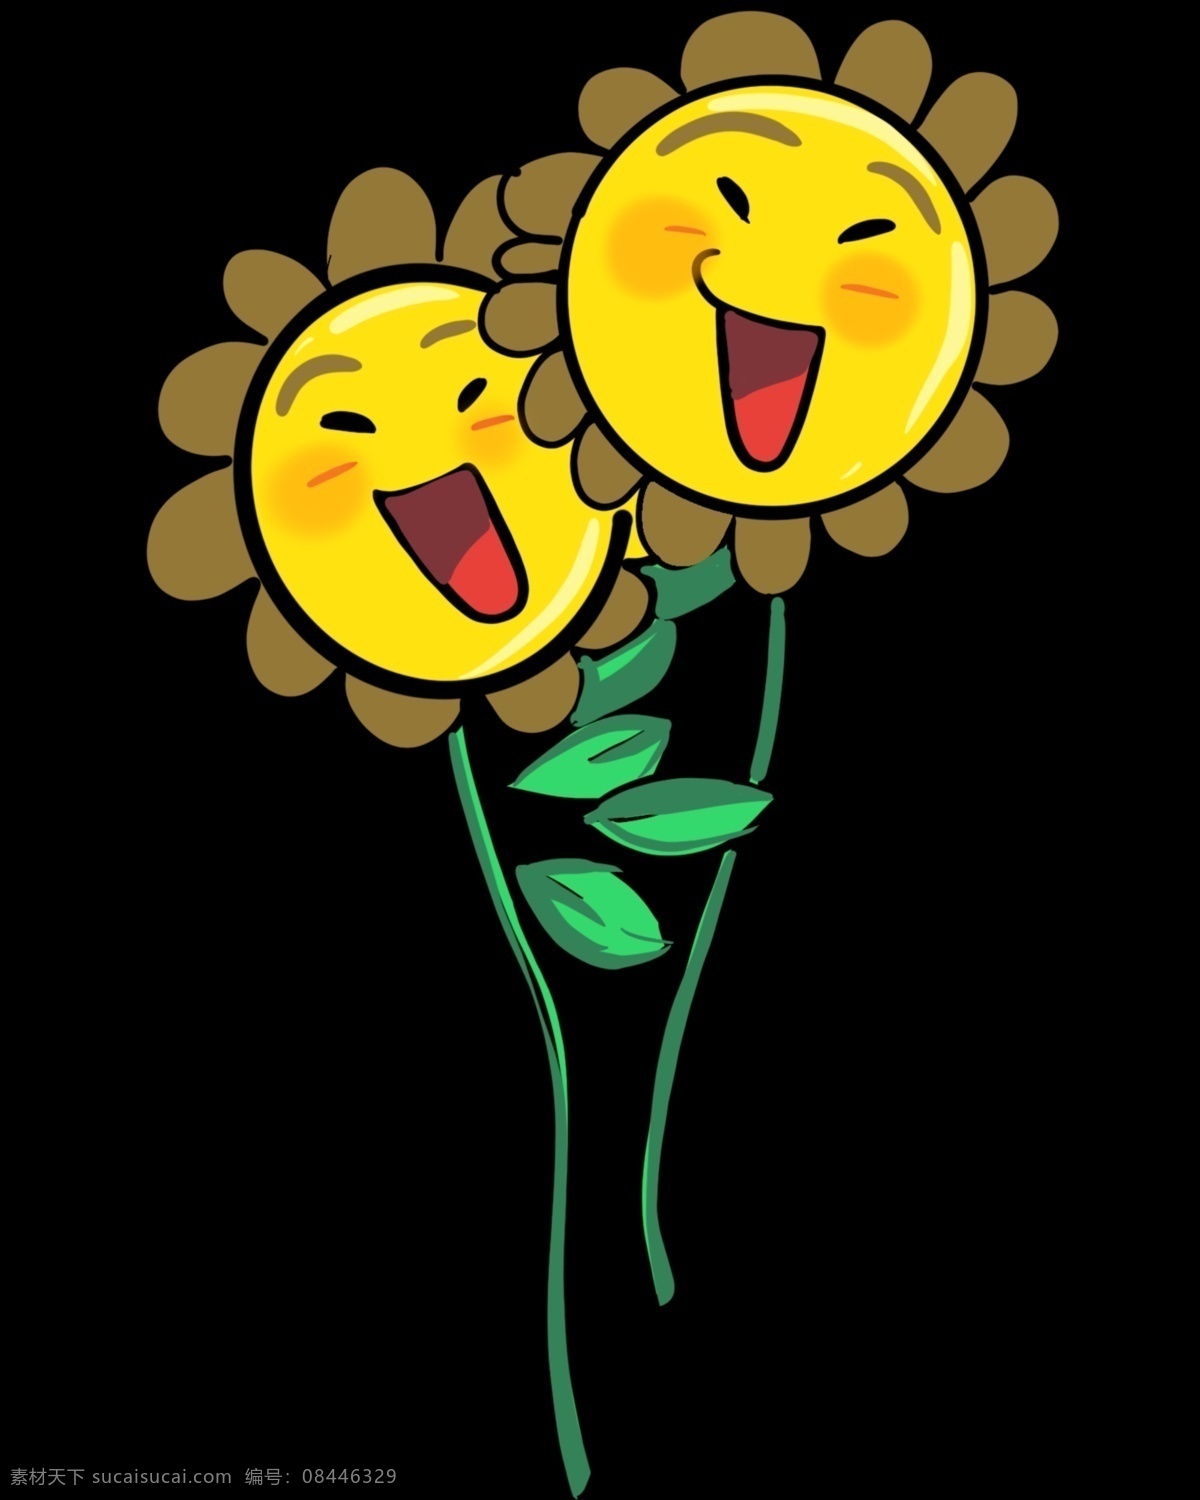 可爱 向日葵 插画 植物插画 卡通植物插画 开心的向日葵 植物 精美 创意植物